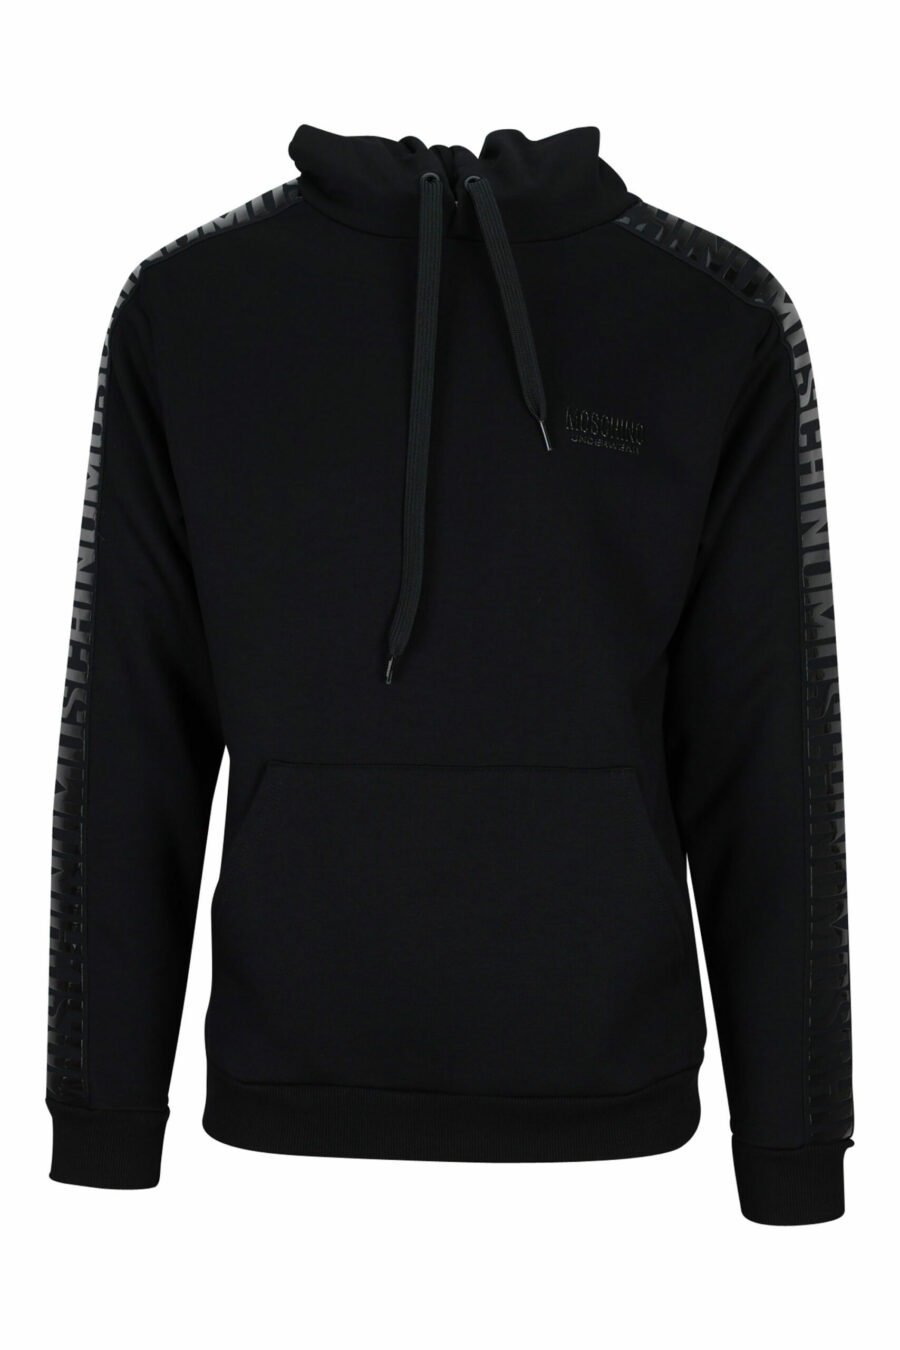 Schwarzes Kapuzensweatshirt mit einfarbigem Logo auf dem seitlichen Taping - 667113011042 skaliert